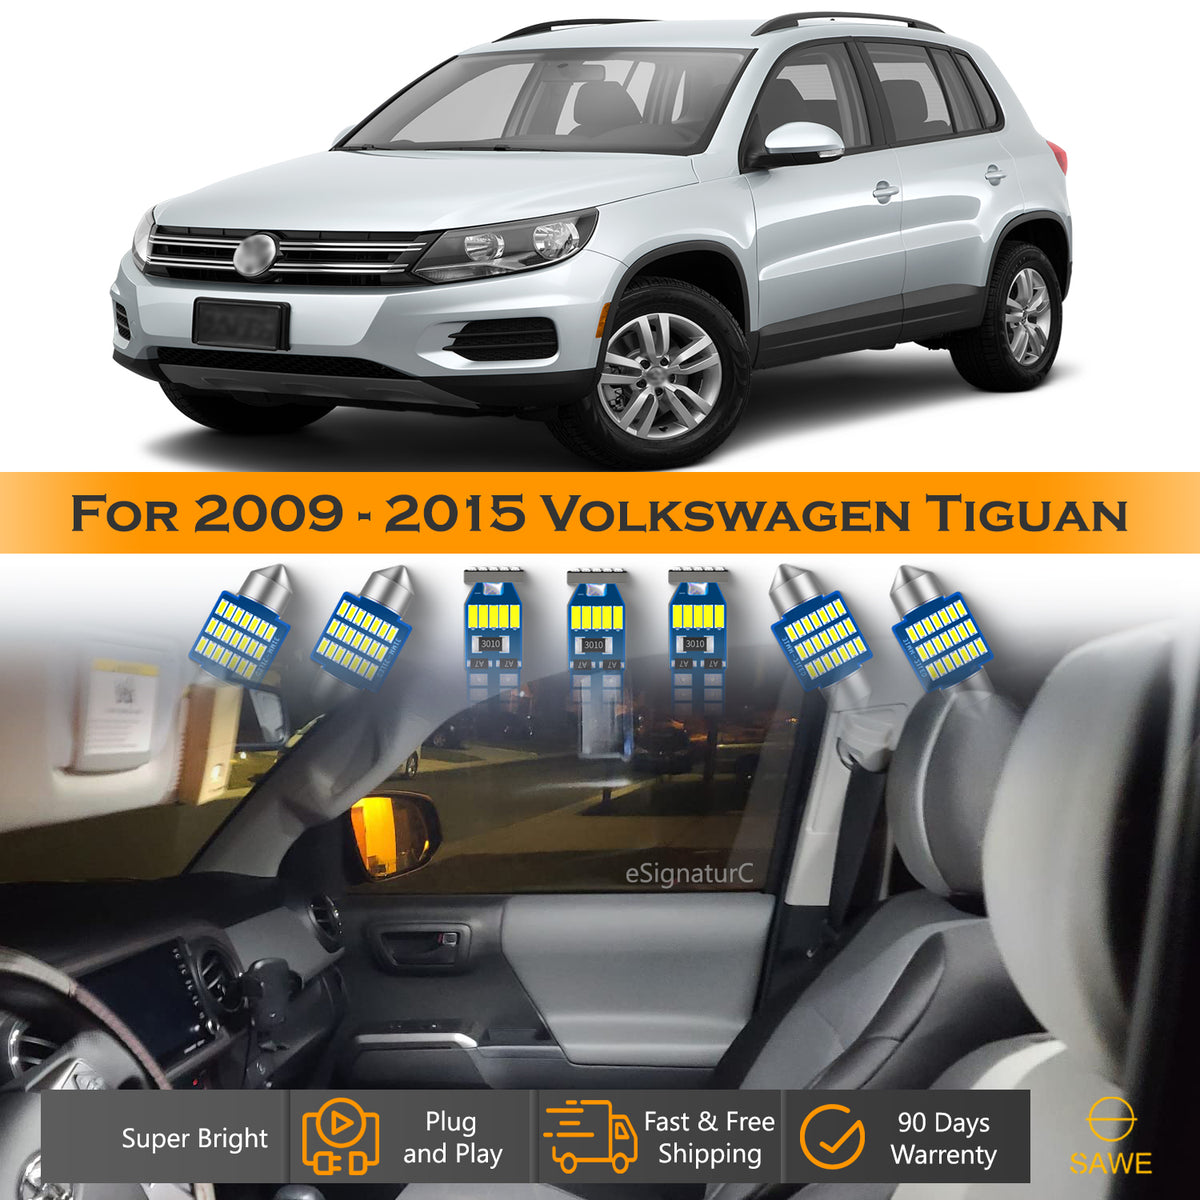 For Volkswagen Tiguan Interior LED Lights - Dome & Map Light Bulbs Package Kit for 2009 - 2015 - White